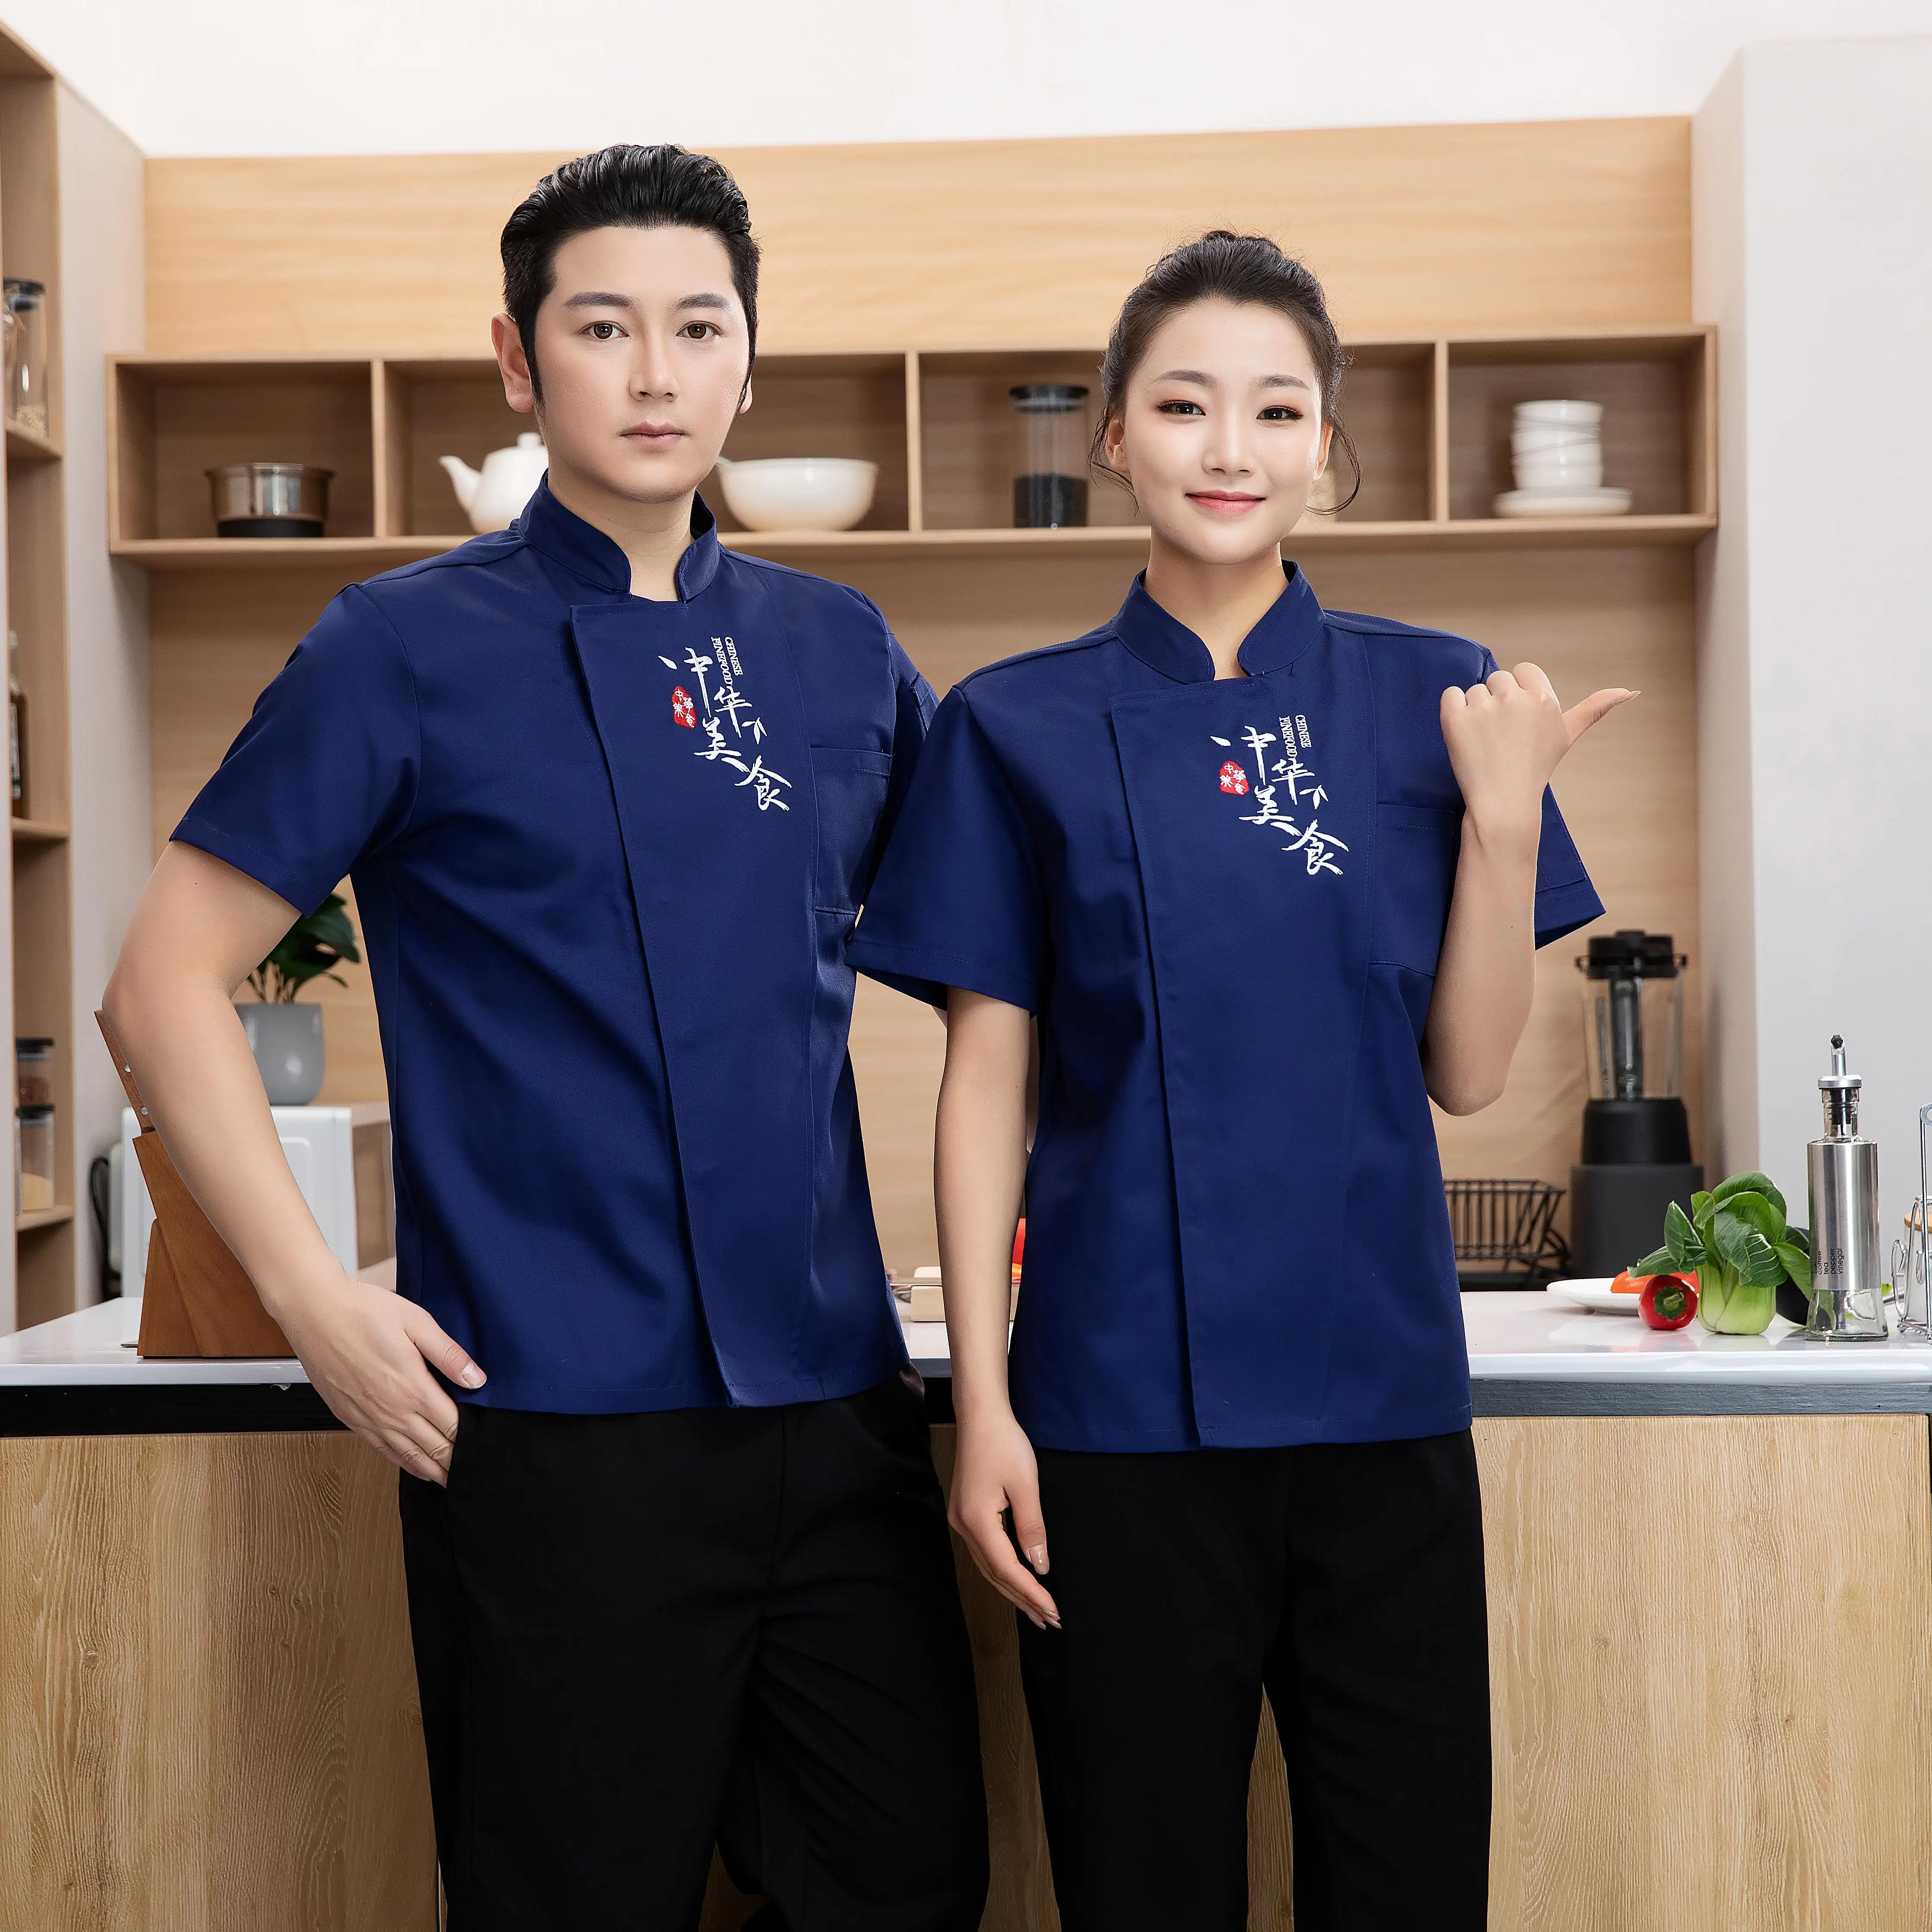 Джинсовая куртка шеф-повара с индивидуальным логотипом, мужская и женская одежда для выпечки в японском стиле, униформа шеф-повара, другая униформа